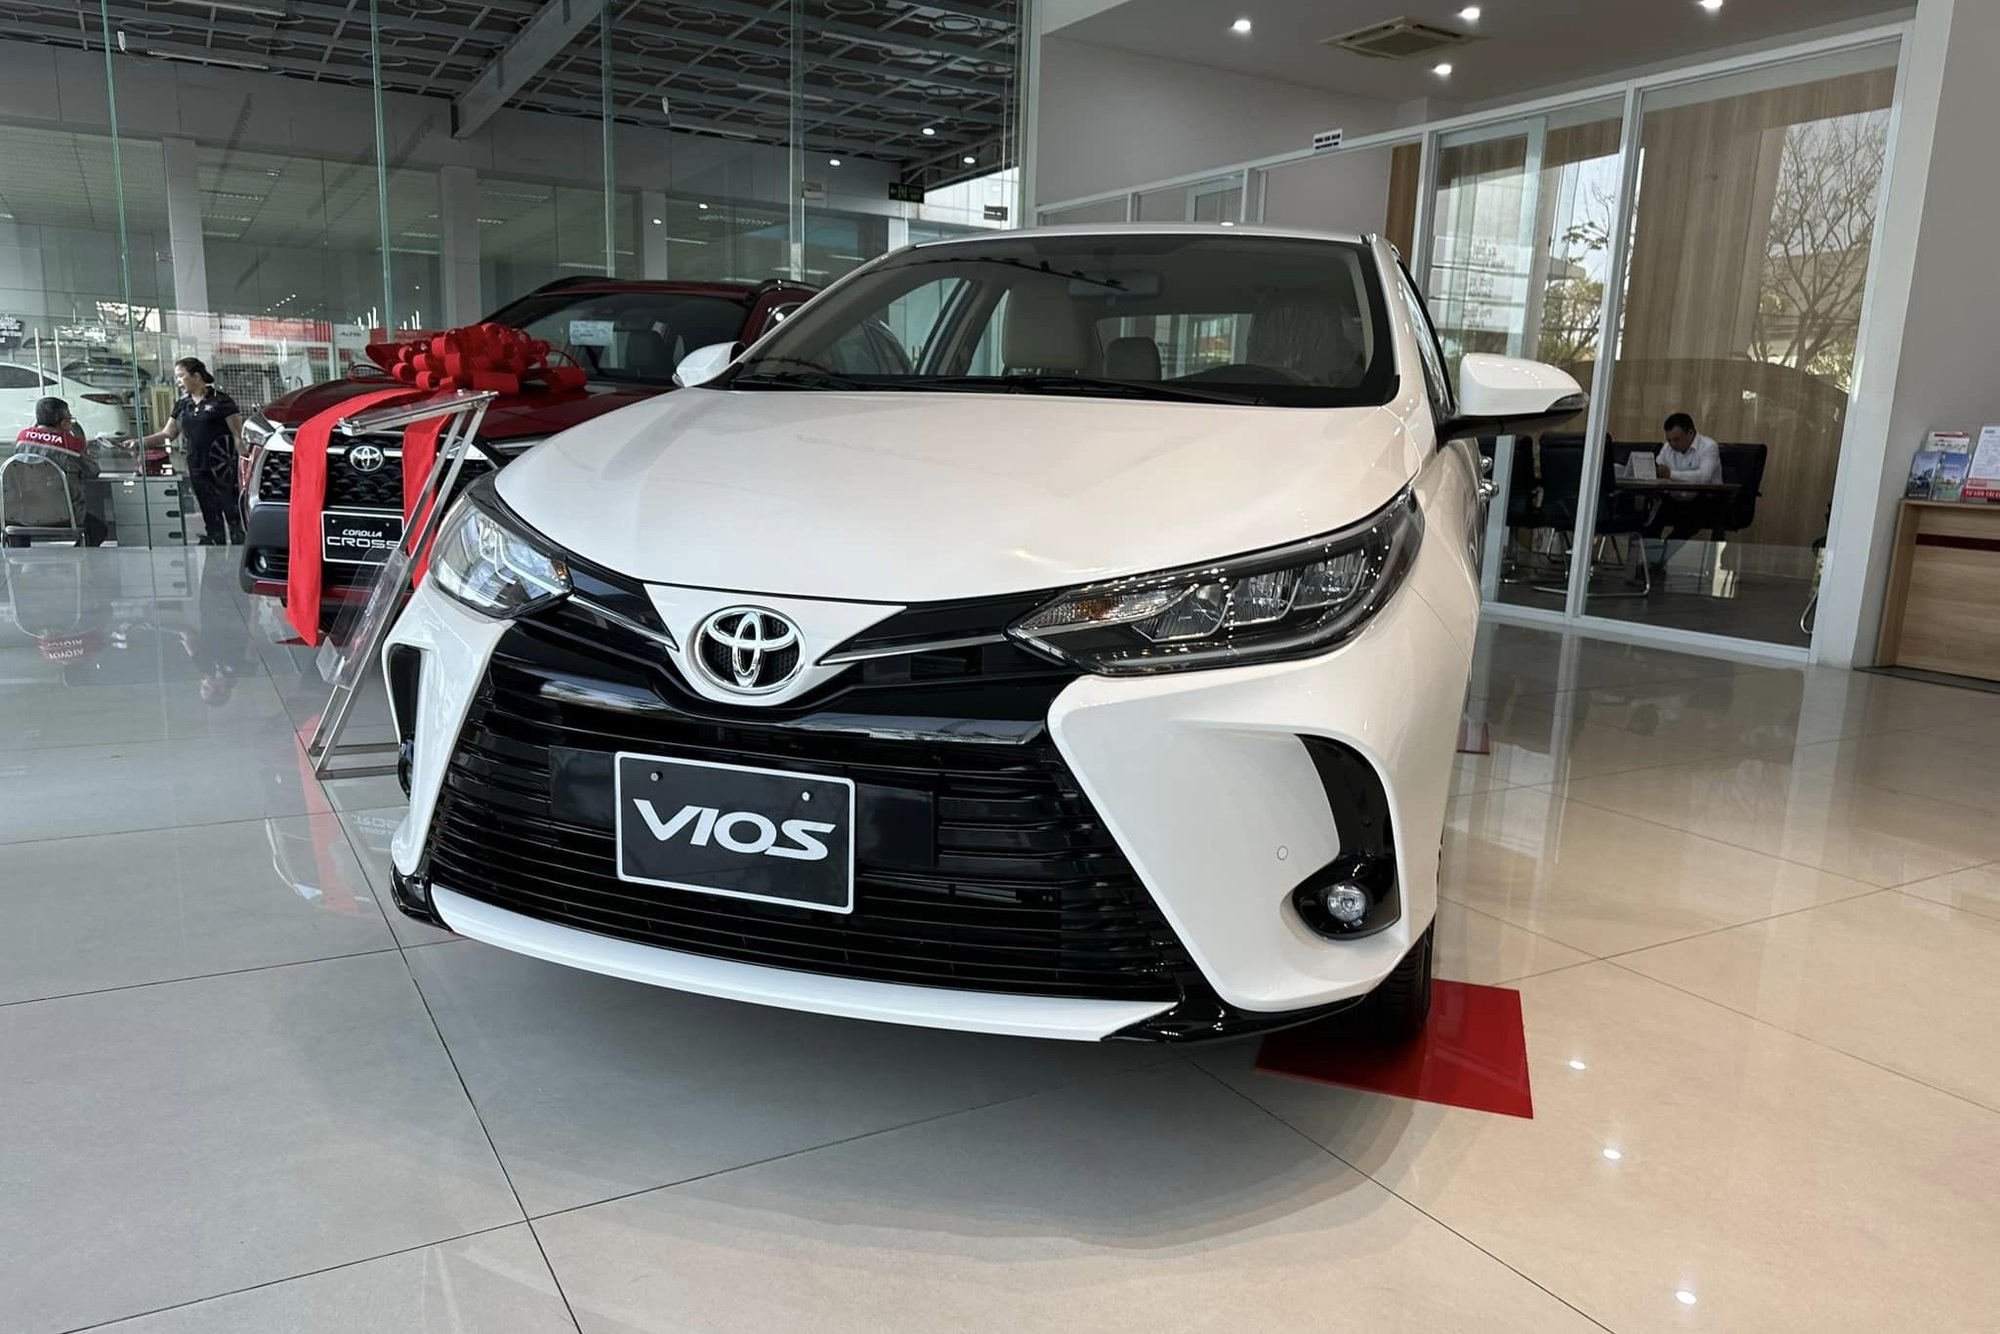 Toyota Vios bán lẫn lộn cũ mới: Bản cũ giảm 110 triệu xả hàng, bản mới ưu đãi lớn chưa từng có - Ảnh 1.